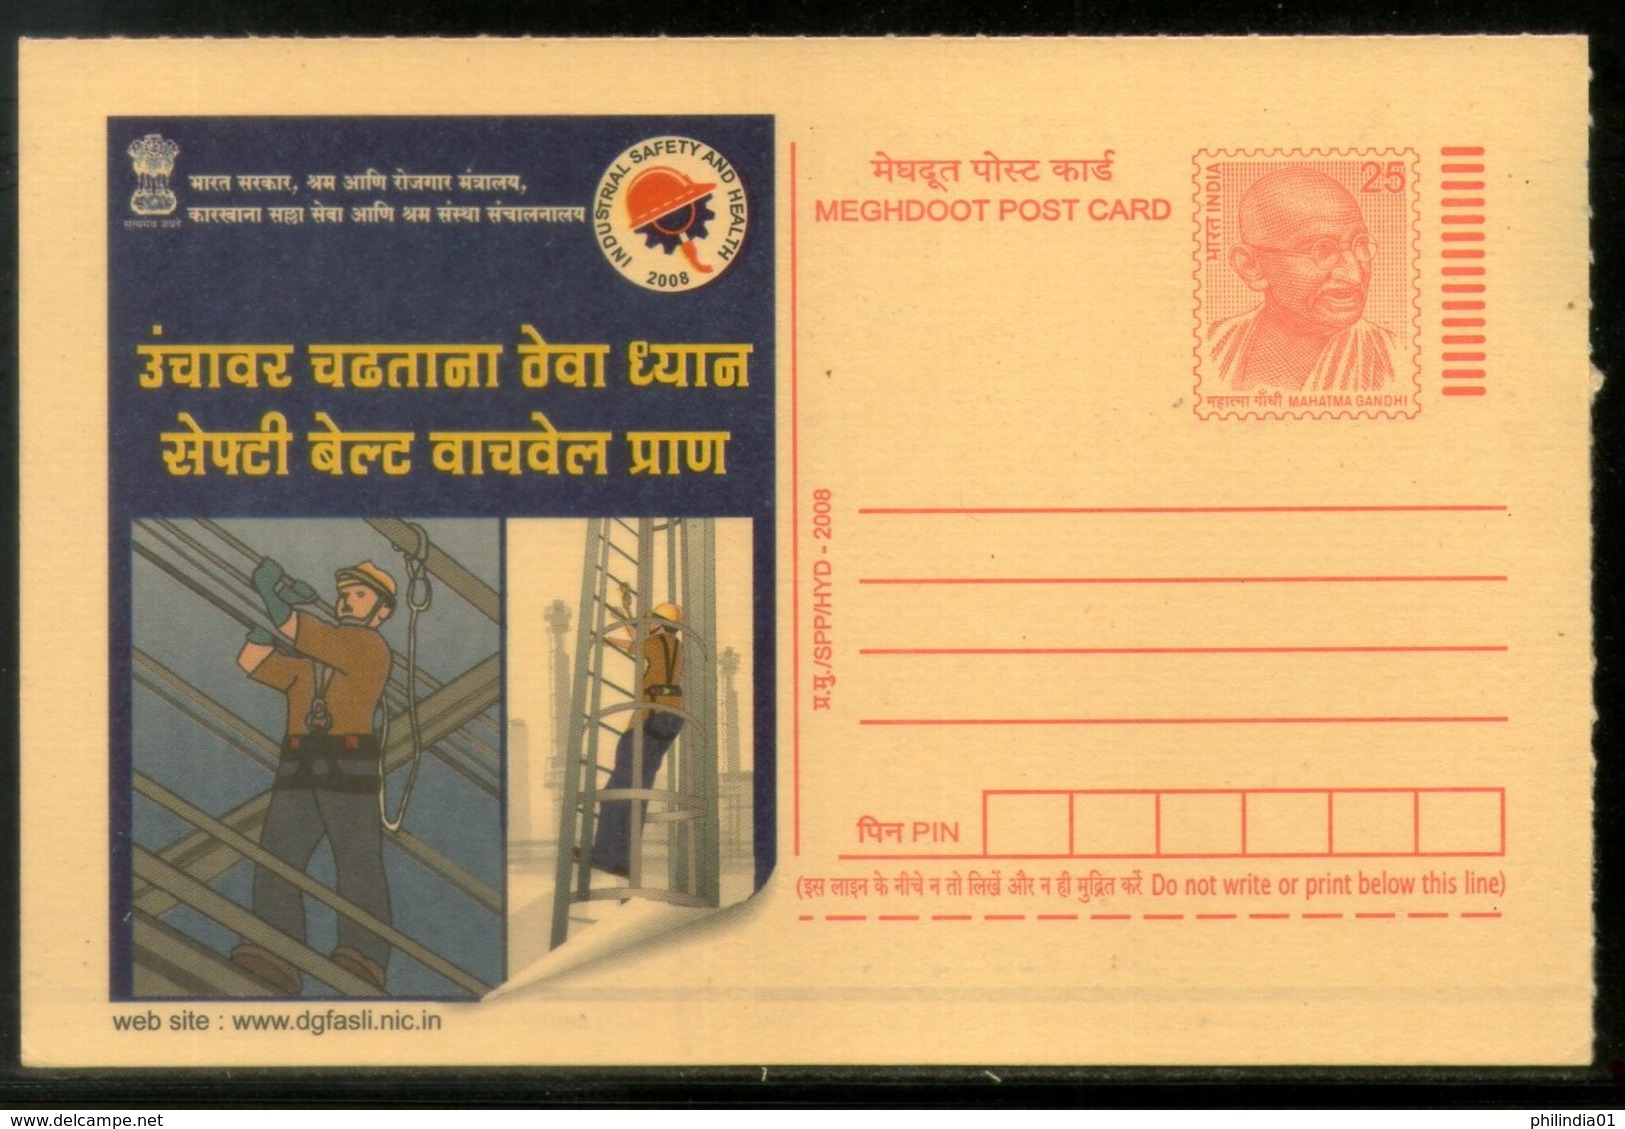 India 2008 Industrial Safety & Health Job Marathi Advert Gandhi Post Card # 505 - Ongevallen & Veiligheid Op De Weg